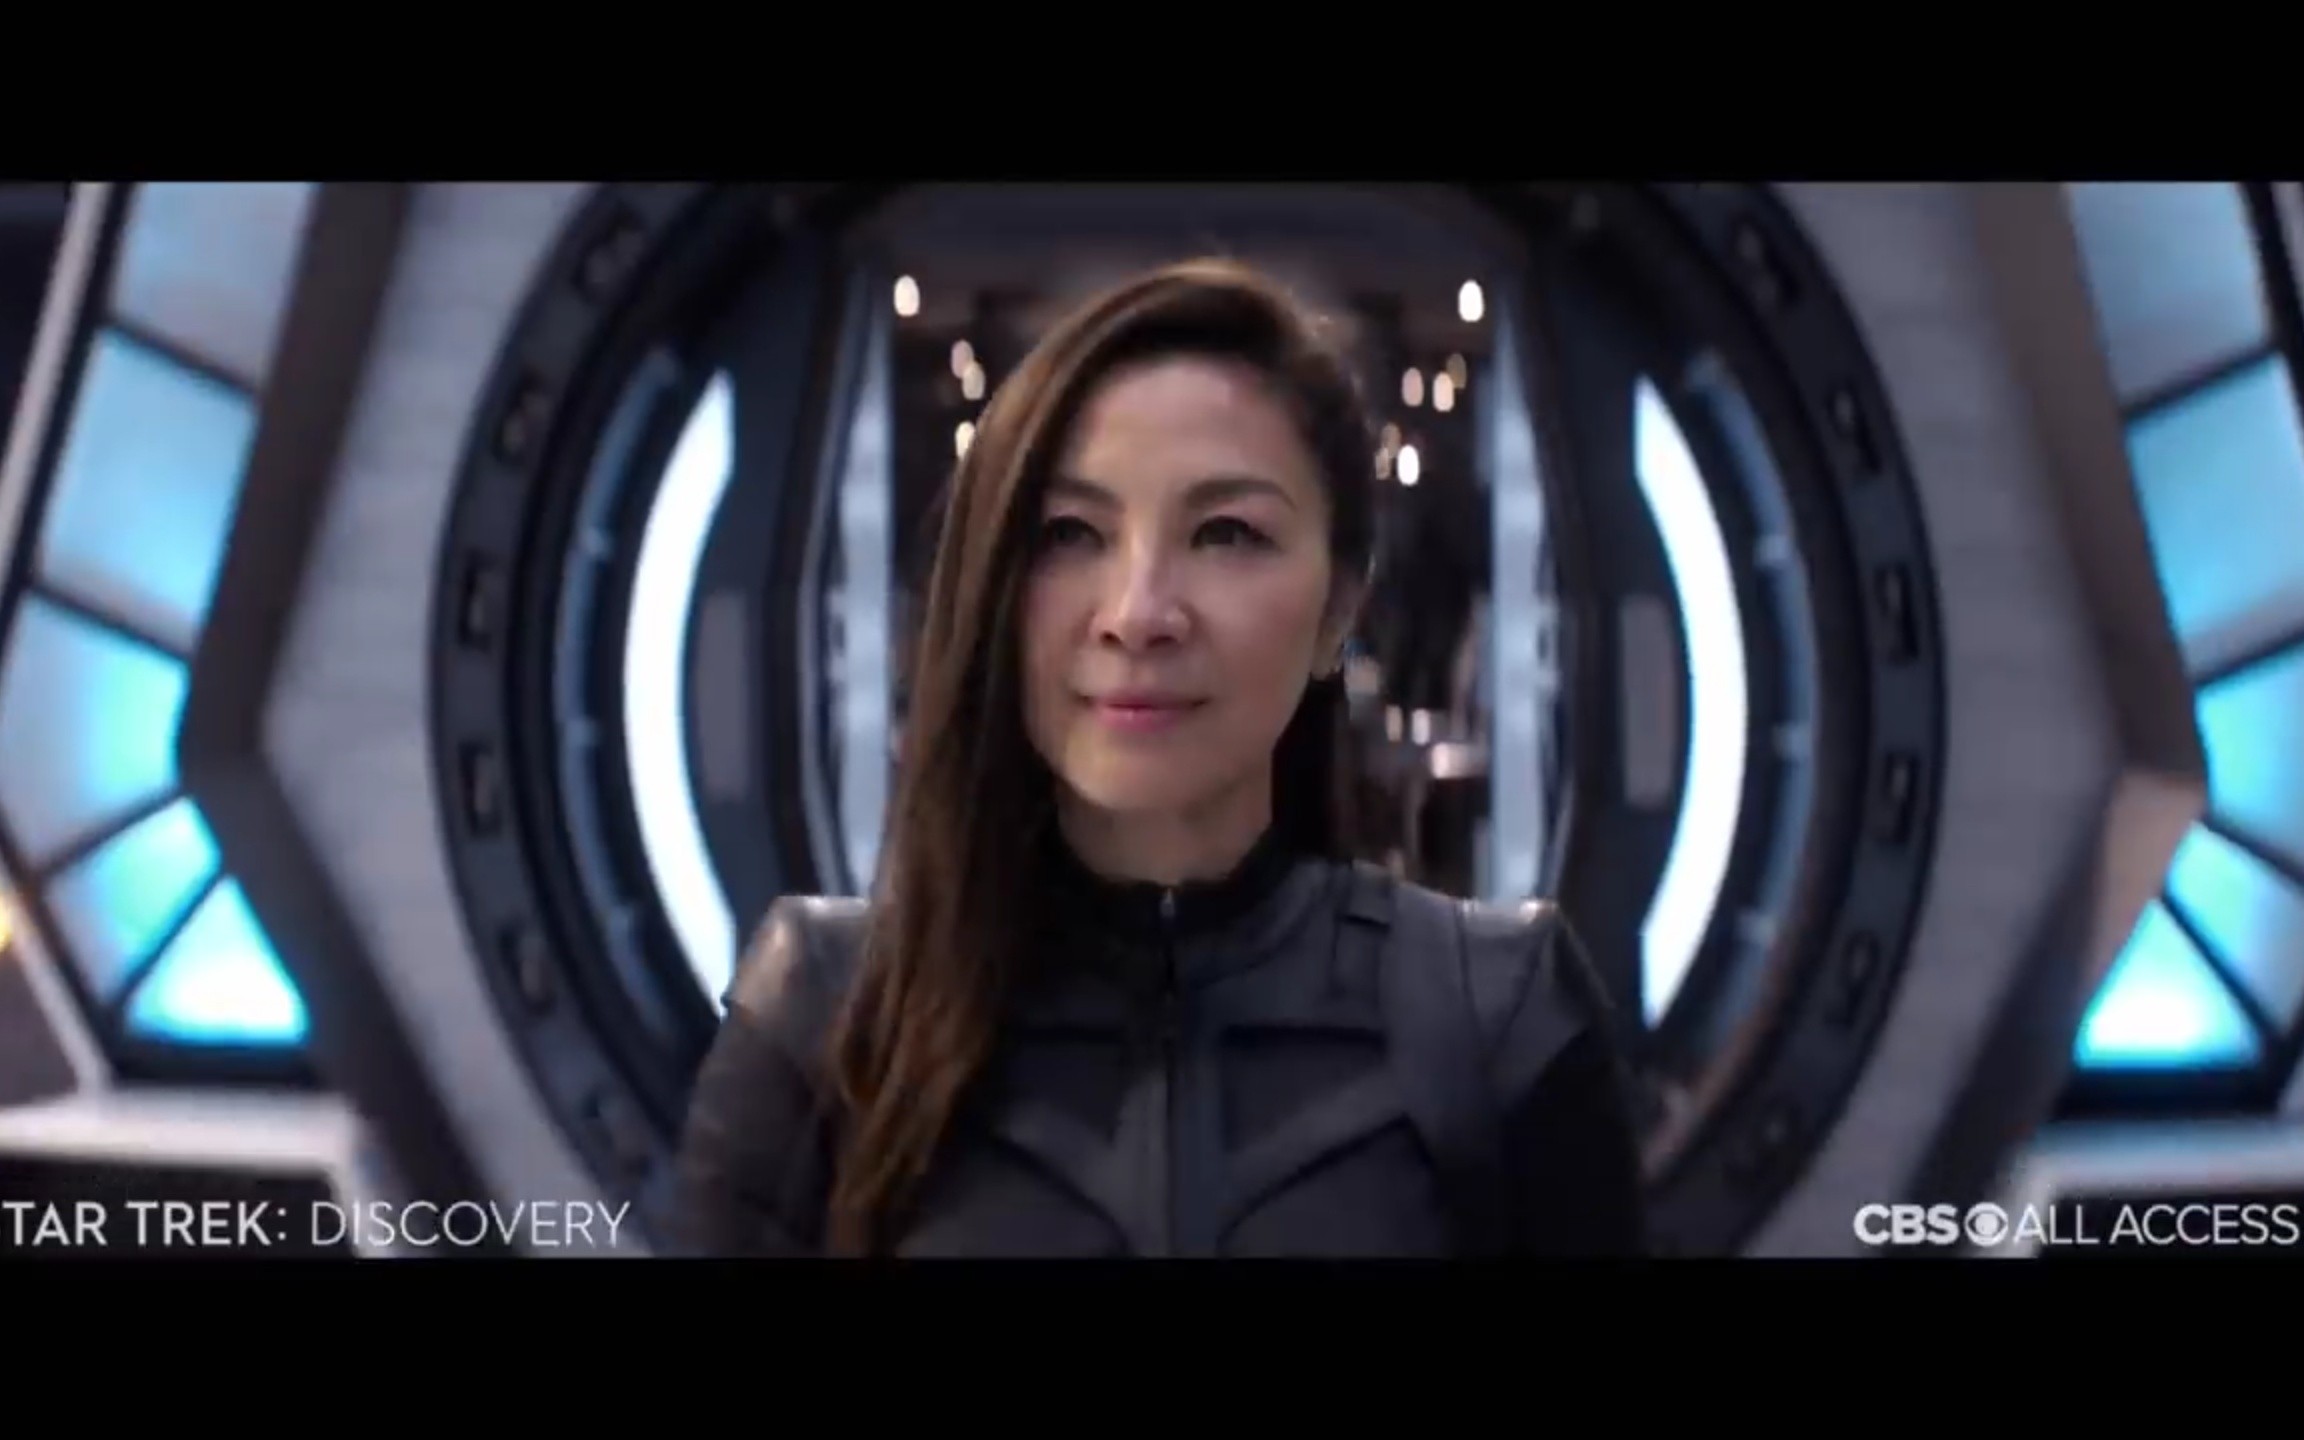 舰长杨紫琼炫酷回归~自信的女人就是帅啊!超棒的科幻大作,值得期待!